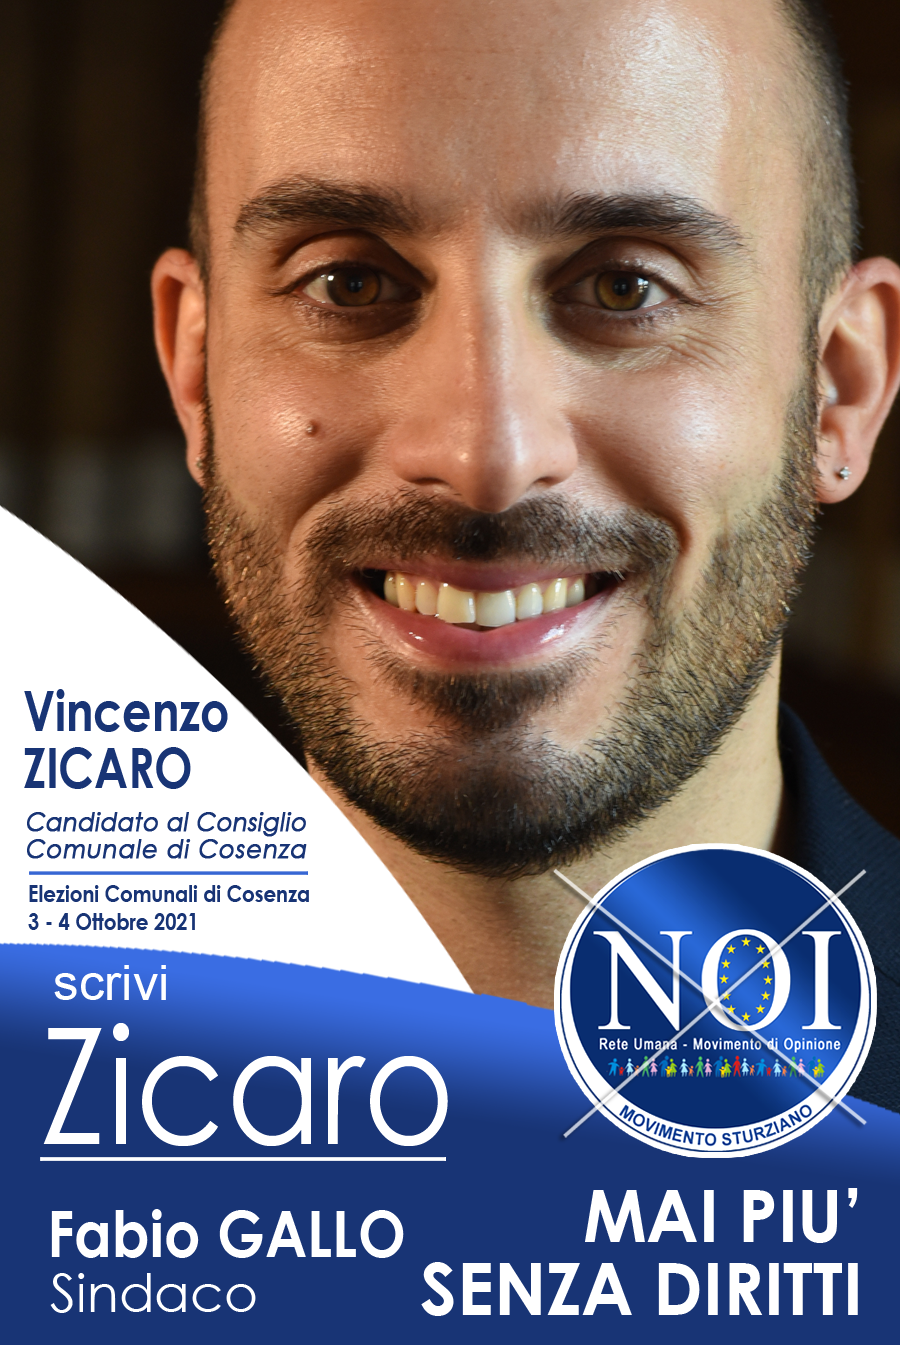 Vincenzo Zicaro